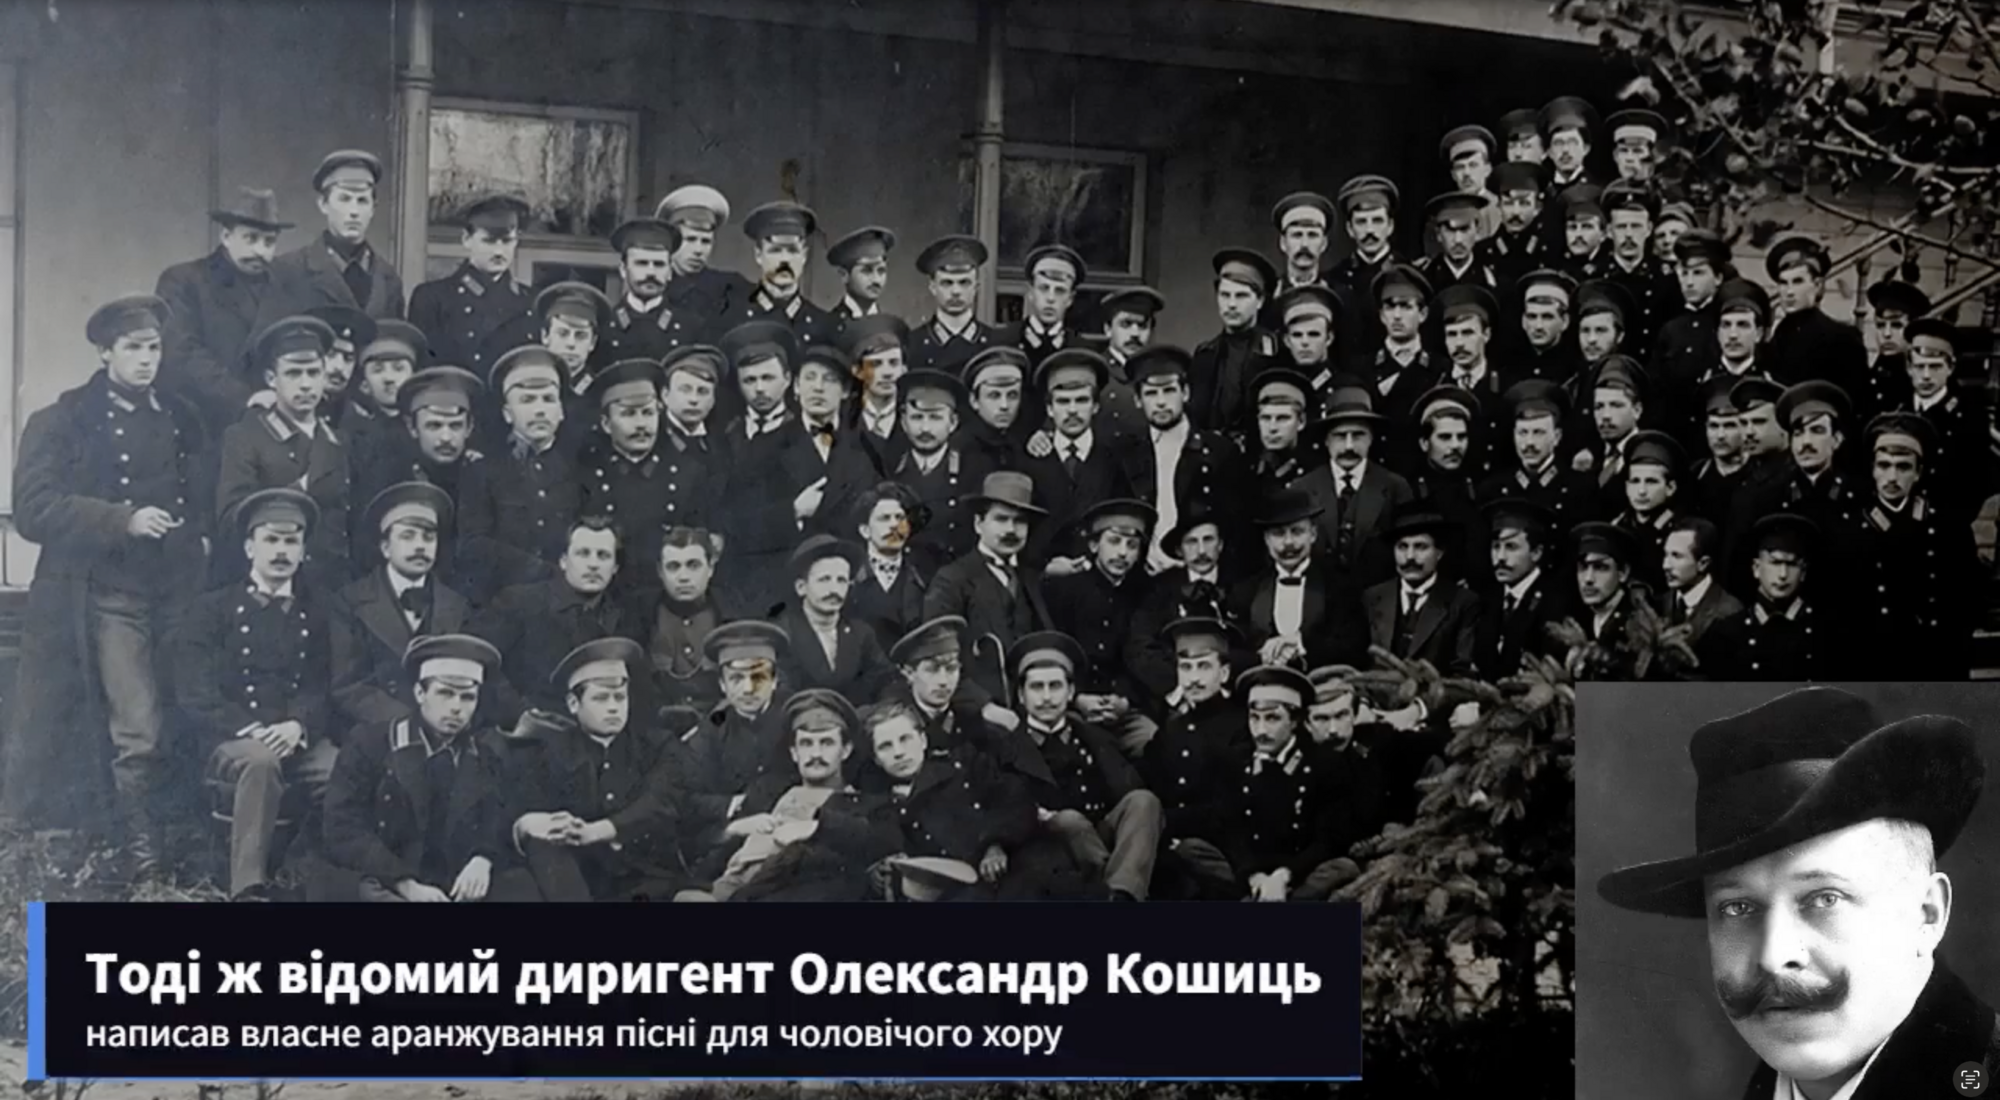 Сеть покорила запись 1944 года, где украинский хор исполняет "Ой у лузі червона калина" в аранжировке Александра Кошица